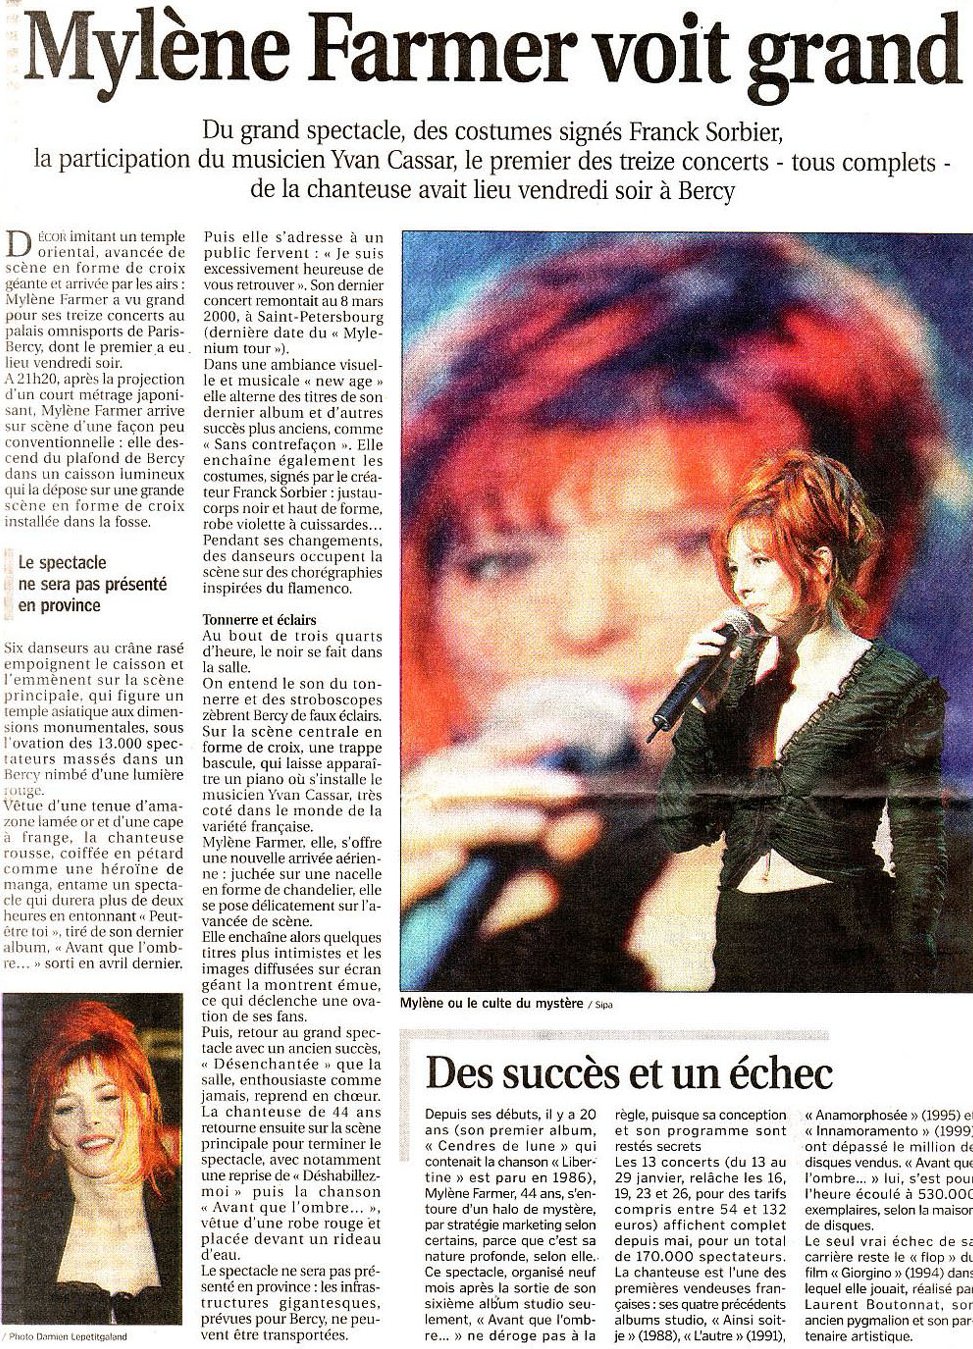 Le Progrès De Lyon 16 janvier 2006